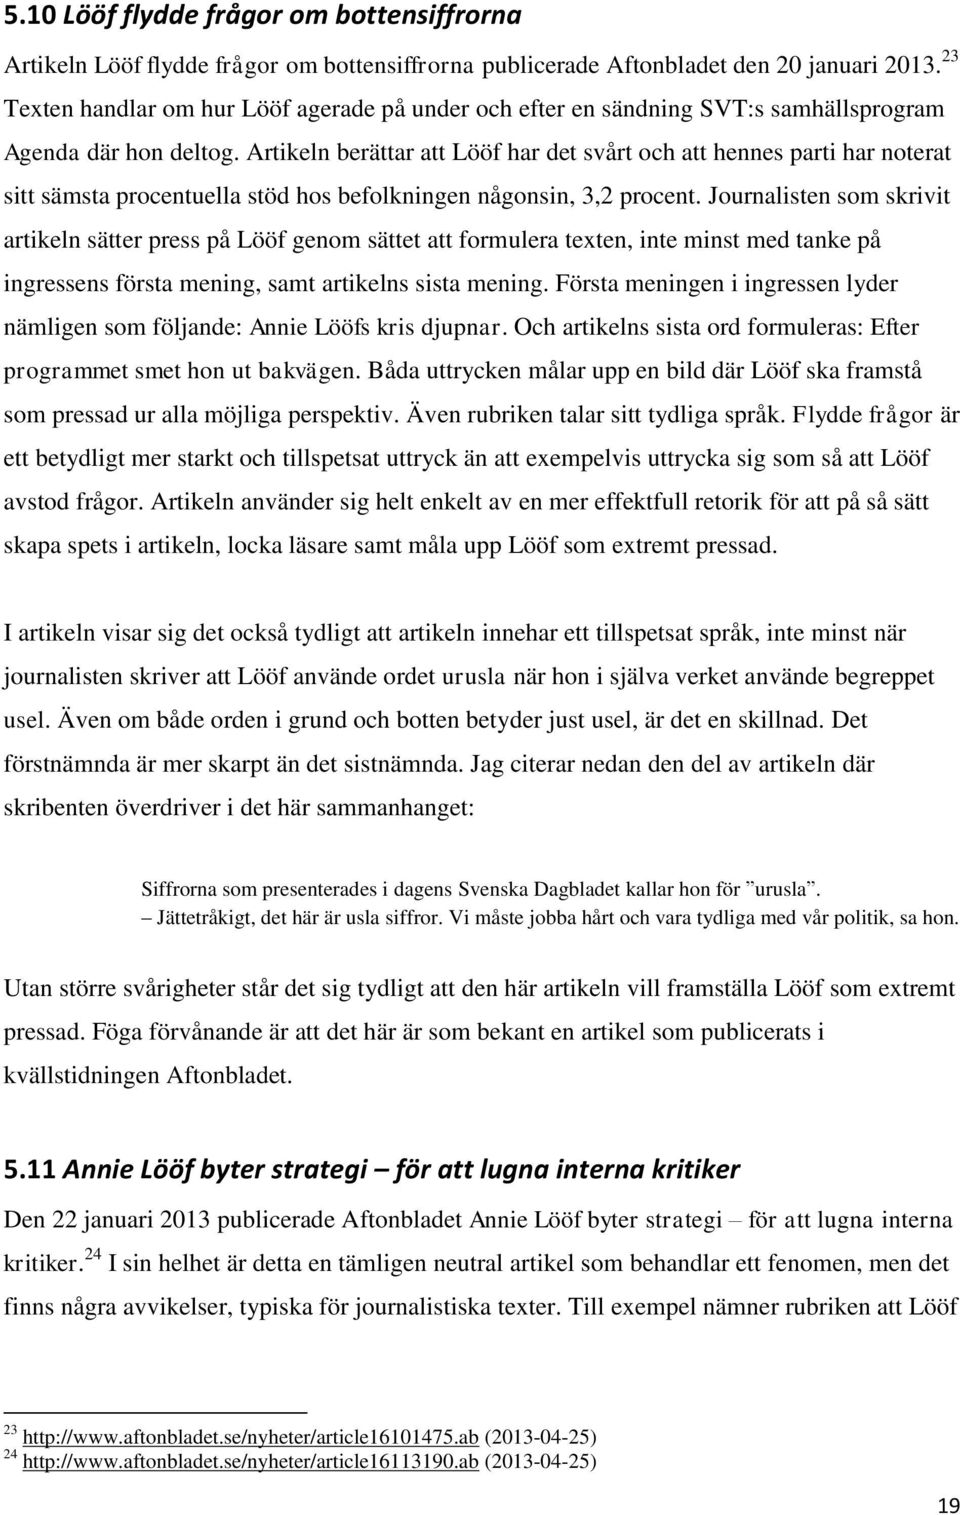 Artikeln berättar att Lööf har det svårt och att hennes parti har noterat sitt sämsta procentuella stöd hos befolkningen någonsin, 3,2 procent.